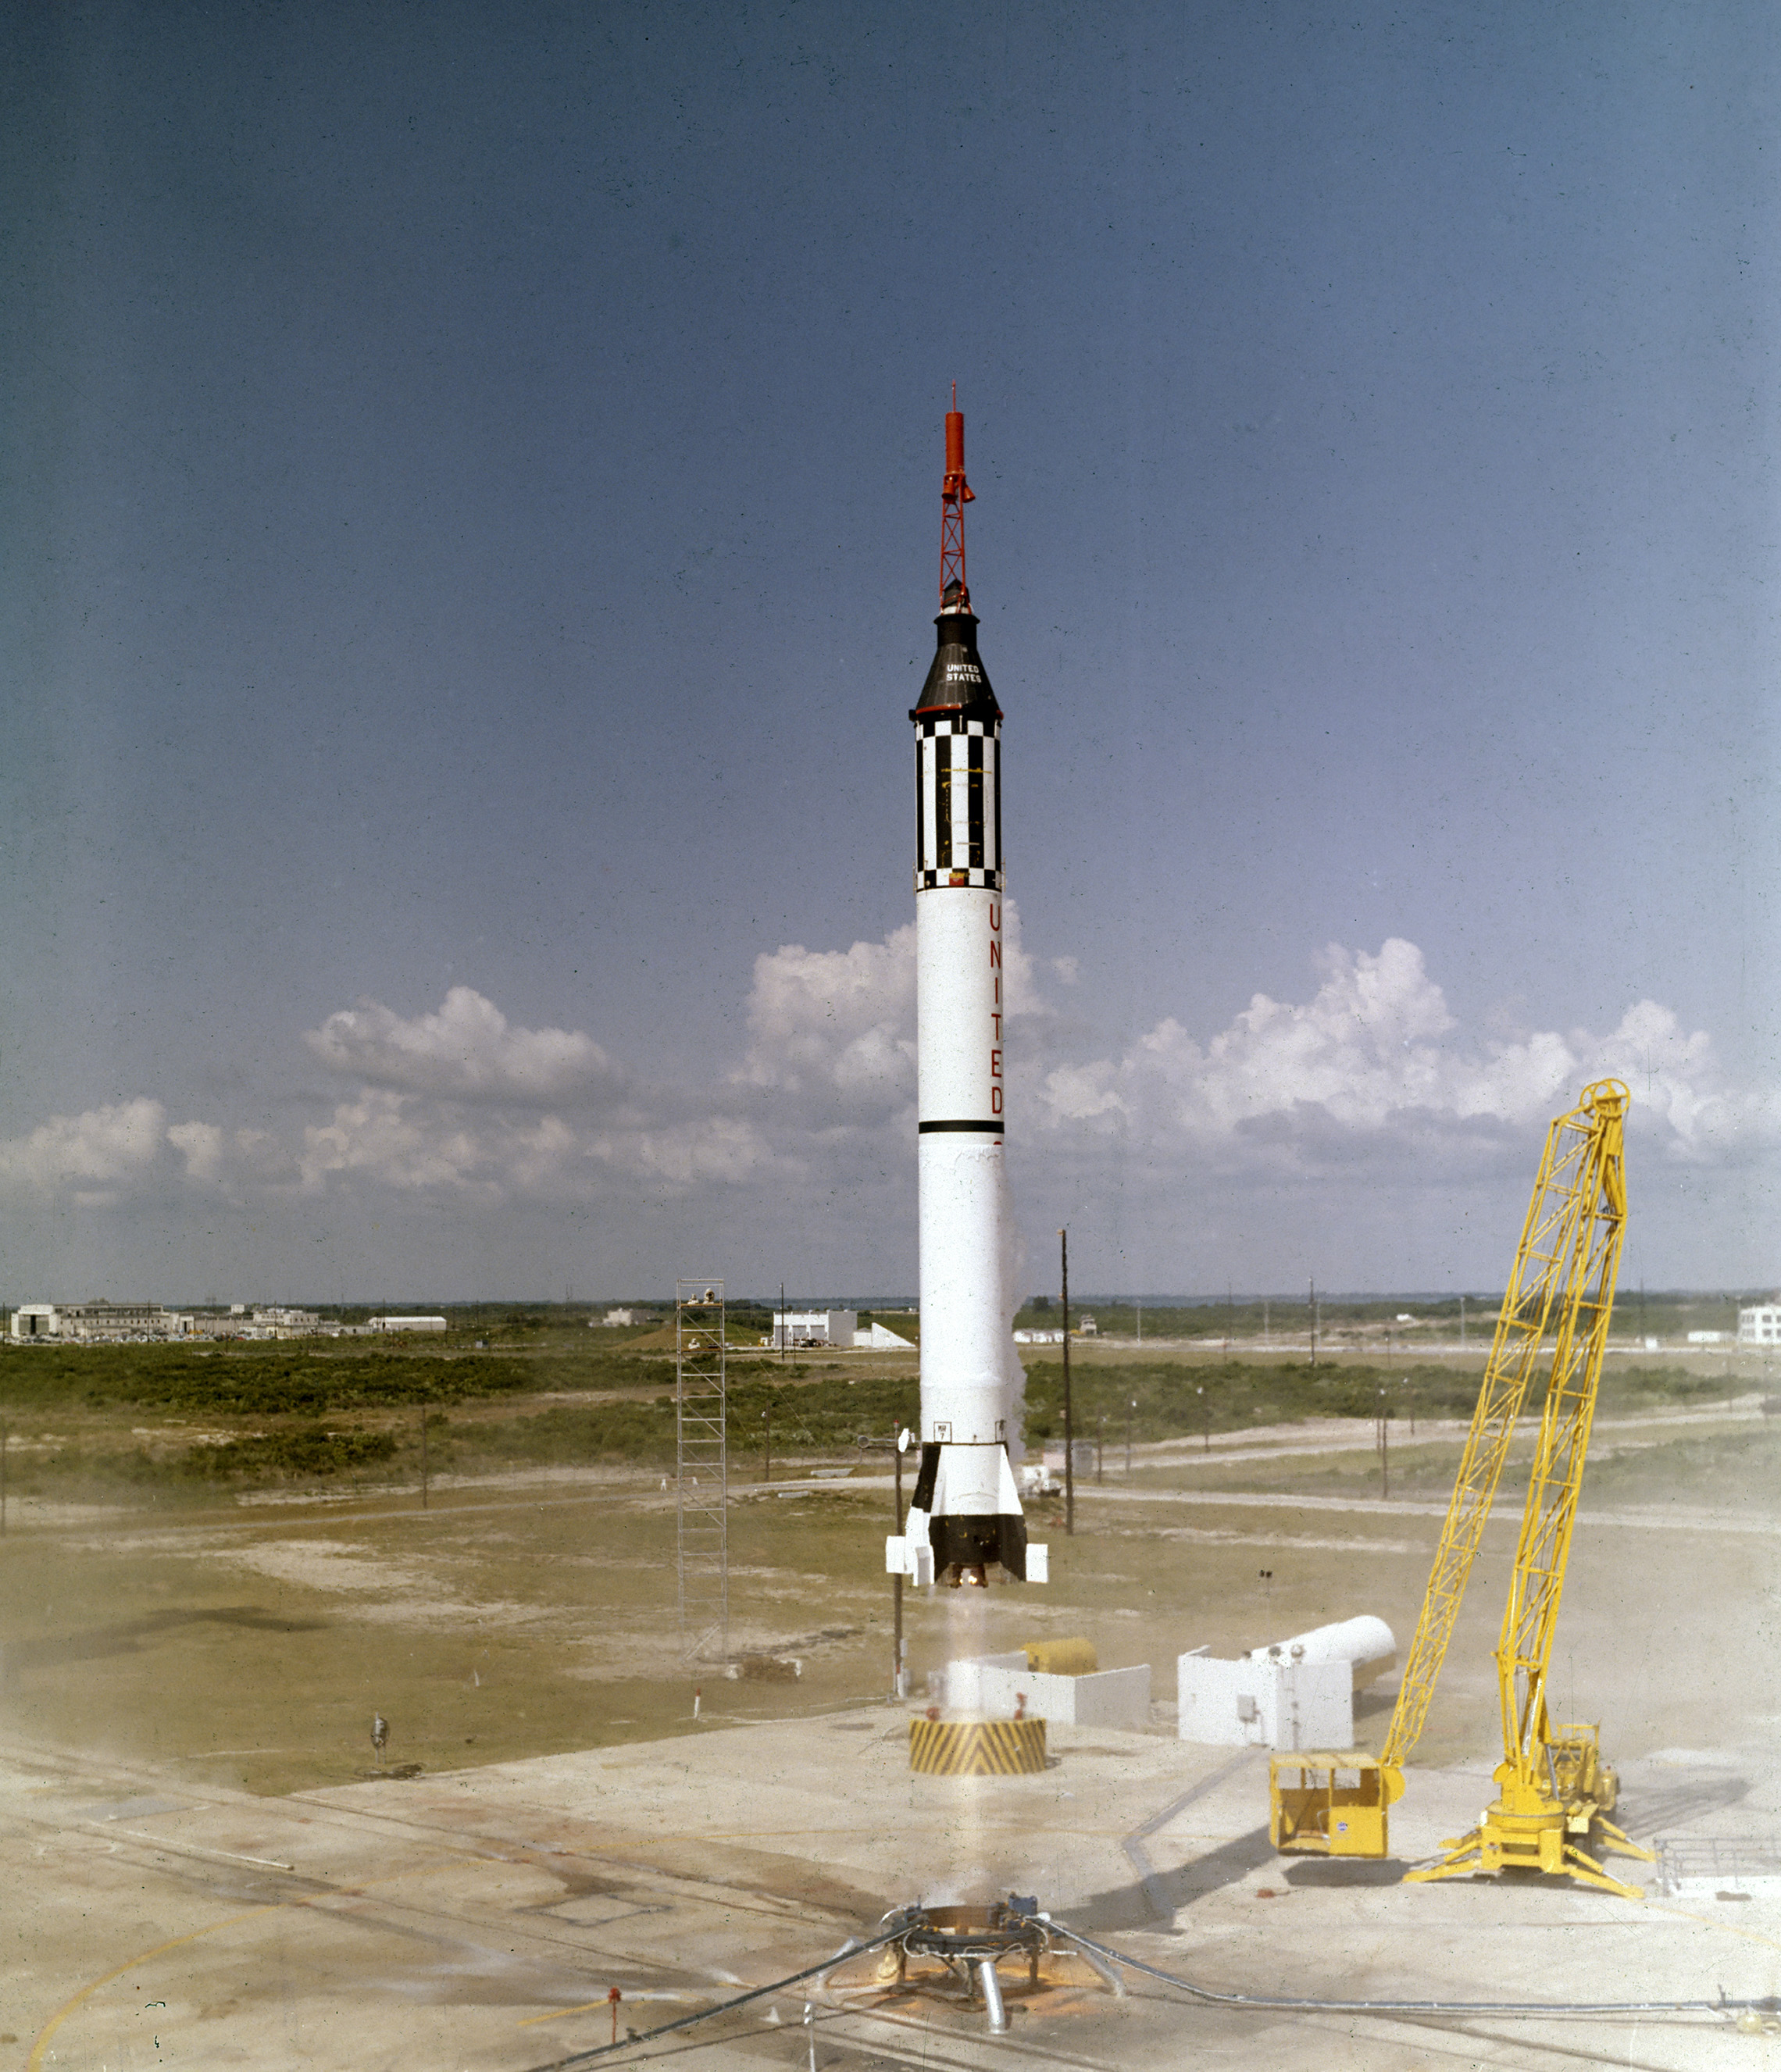 astronauta Alan B. Shepard Jr.wystartował w statku kosmicznym Freedom 7 Mercury 5 maja 1961 roku. Trzeci lot pojazdu Mercury-Redstone (MR-3), opracowany przez dr Wernhera von Brauna i zespół rakietowy w Huntsille w Alabamie, był pierwszą załogową misją kosmiczną dla Stanów Zjednoczonych. Podczas 15-minutowego lotu suborbitalnego Shepard osiągnął wysokość 115 mil i przebył 302 mile w dół. (NASA)